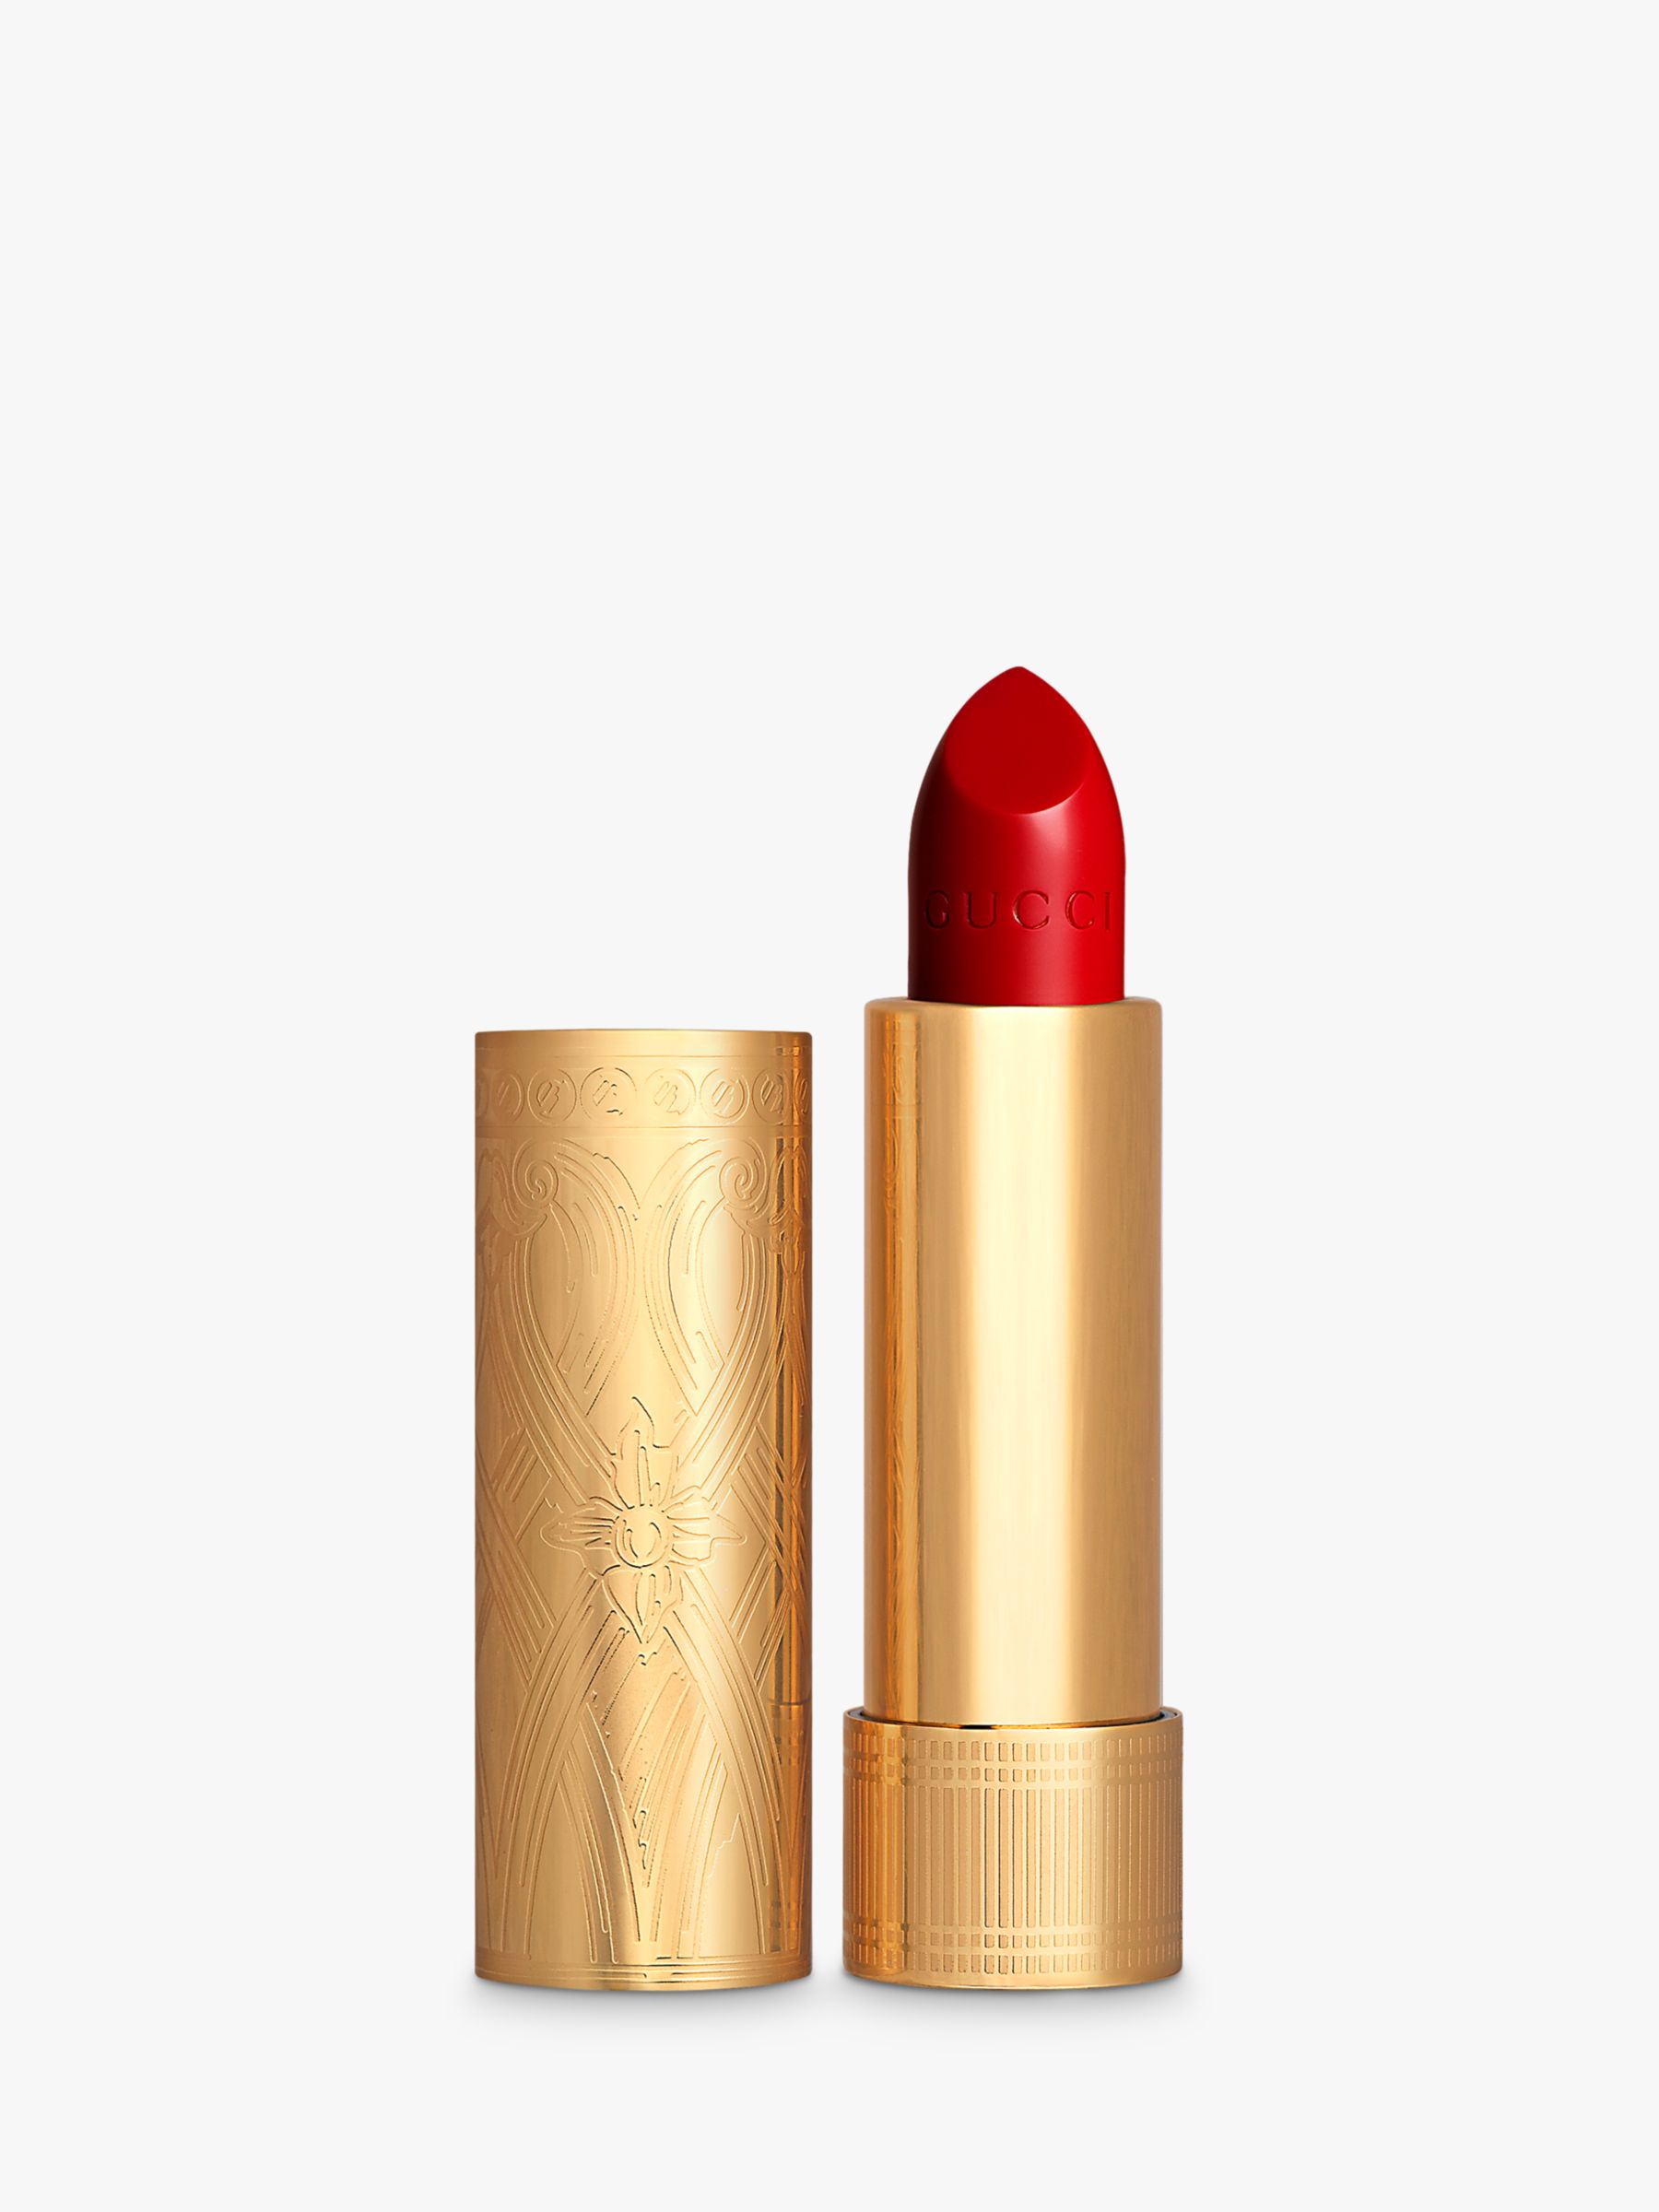 Gucci Rouge À Lèvres Satin Lipstick, 502 Eadie Scarlet 1